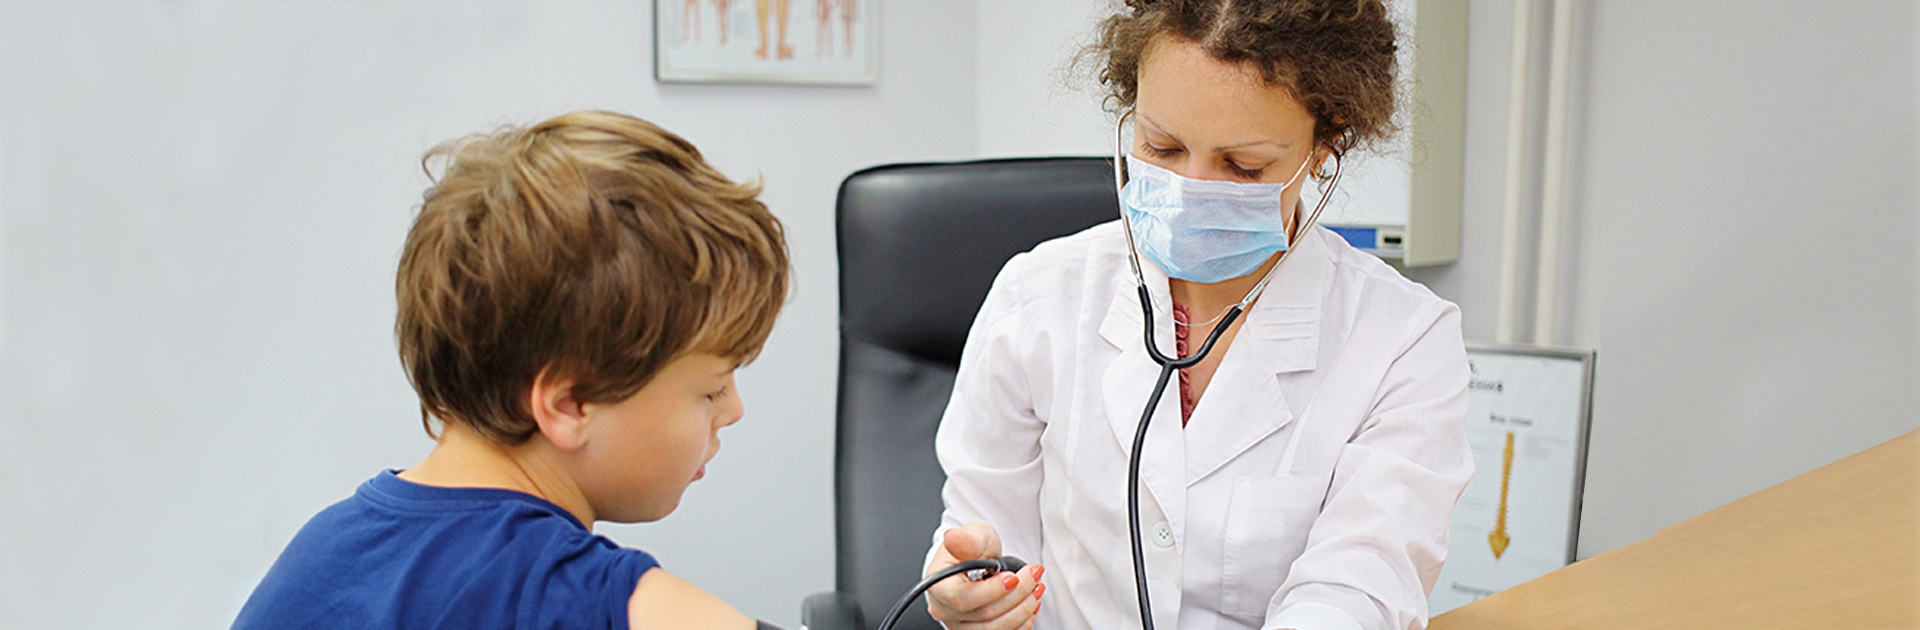 In einer Praxis misst eine Ärztin einem Jungen den Blutdruck. Sie trägt einen weißen Kittel sowie einen Mund-Nasen-Schutz. Der Junge trägt ein blaues T-Shirt und am Oberarm die Manschette des Messgeräts.